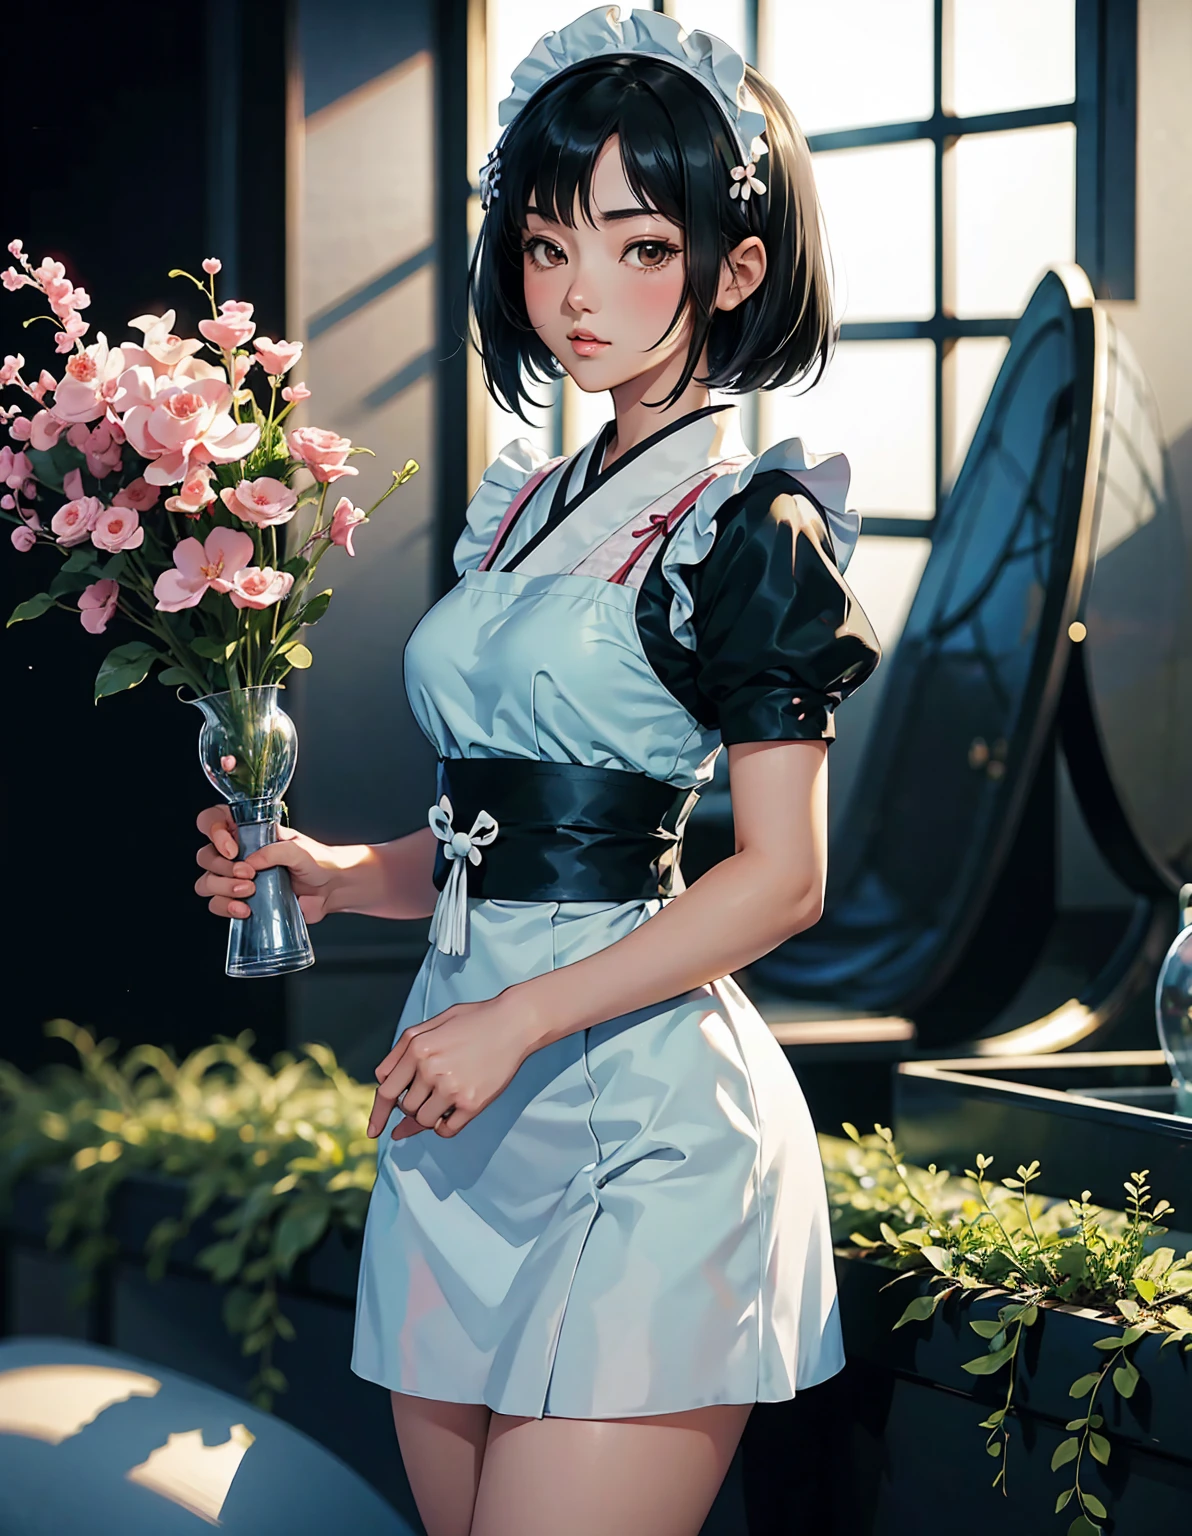 فتاة خادمة لطيف على الطريقة اليابانية, شعر اسود قصير, يقف في حديقة داخلية مشرقة ومريحة, أسلوب المانجا --ar 3:4-نيجي 6
